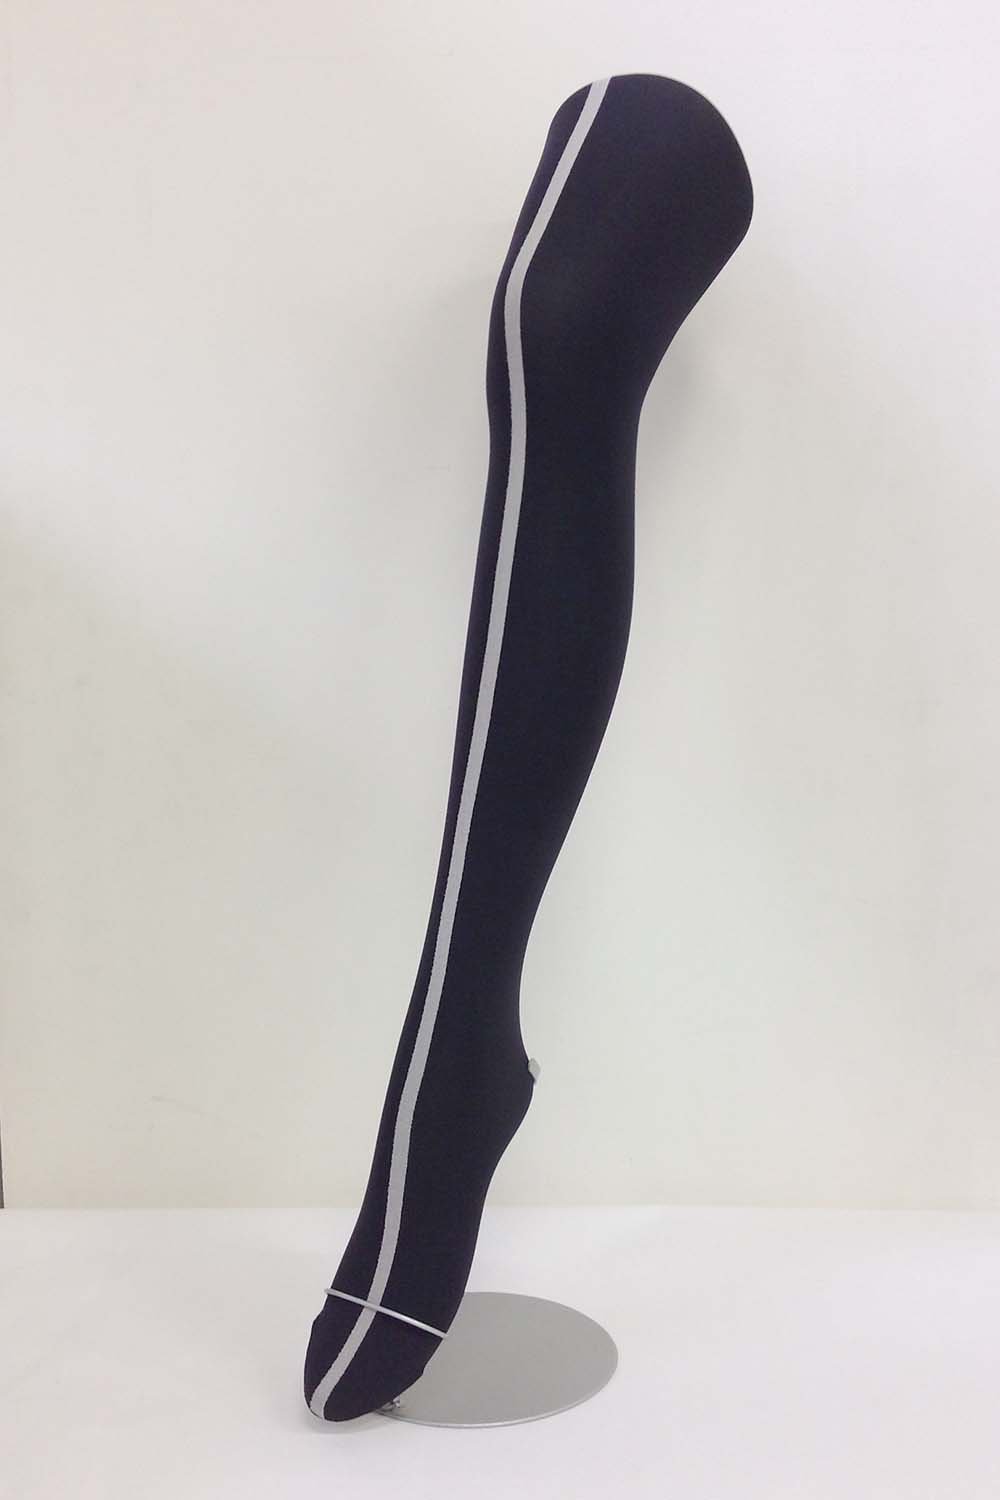 ヒトヨタケのタイツ /pattern tights/柄タイツ,ファッション,きのこタイツ, textured stocking - Shop  nocco. Stockings - Pinkoi